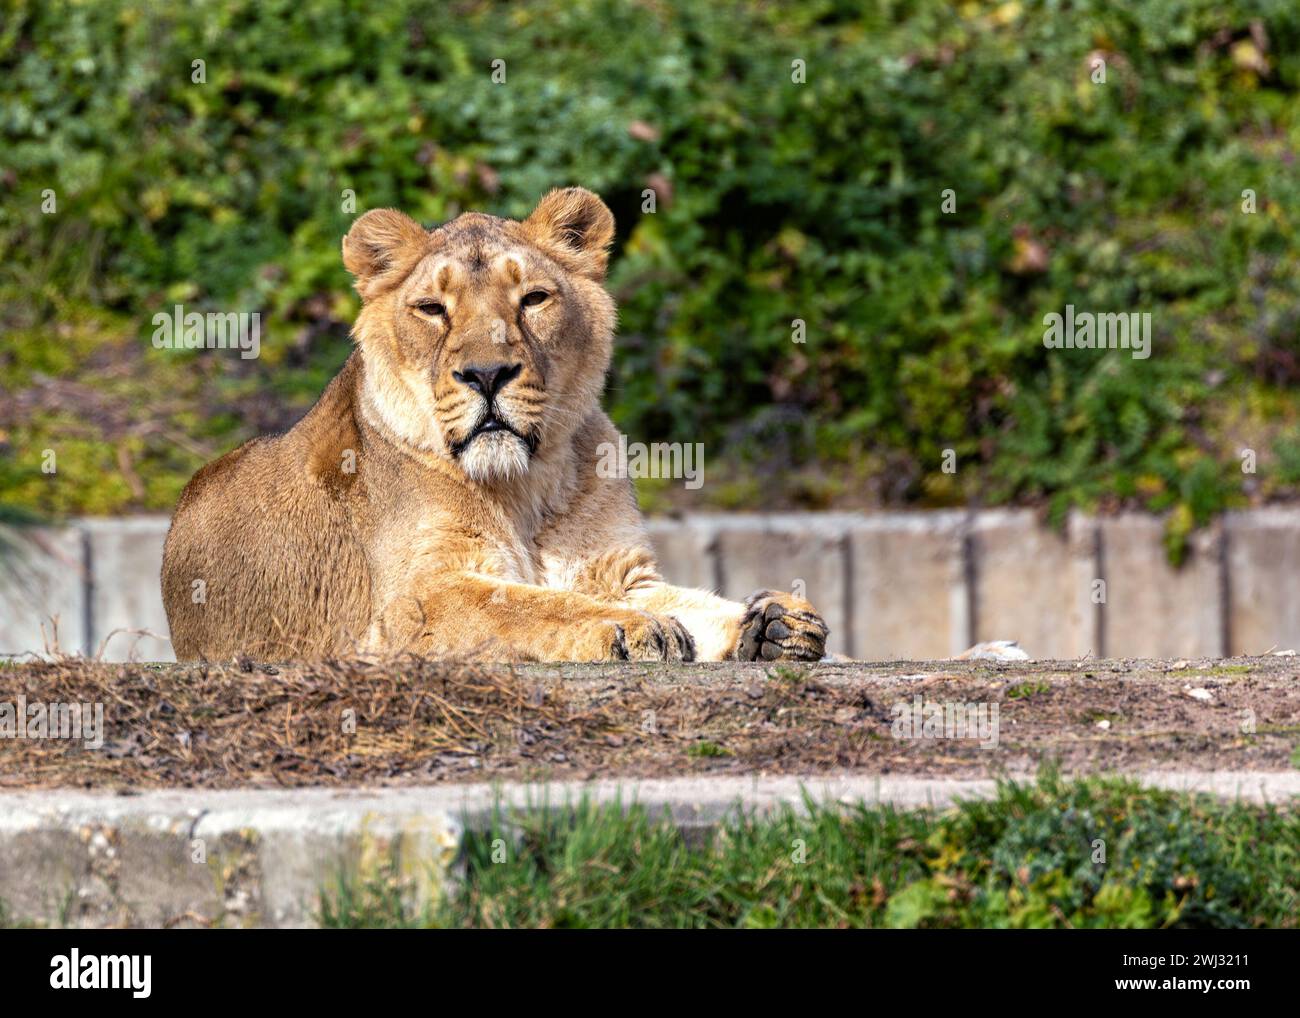 Le lion asiatique femelle, trouvé dans l'état du Gujarat, en Inde, est un carnivore majestueux connu pour sa force et sa beauté, représentant un symbole d'escroc Banque D'Images